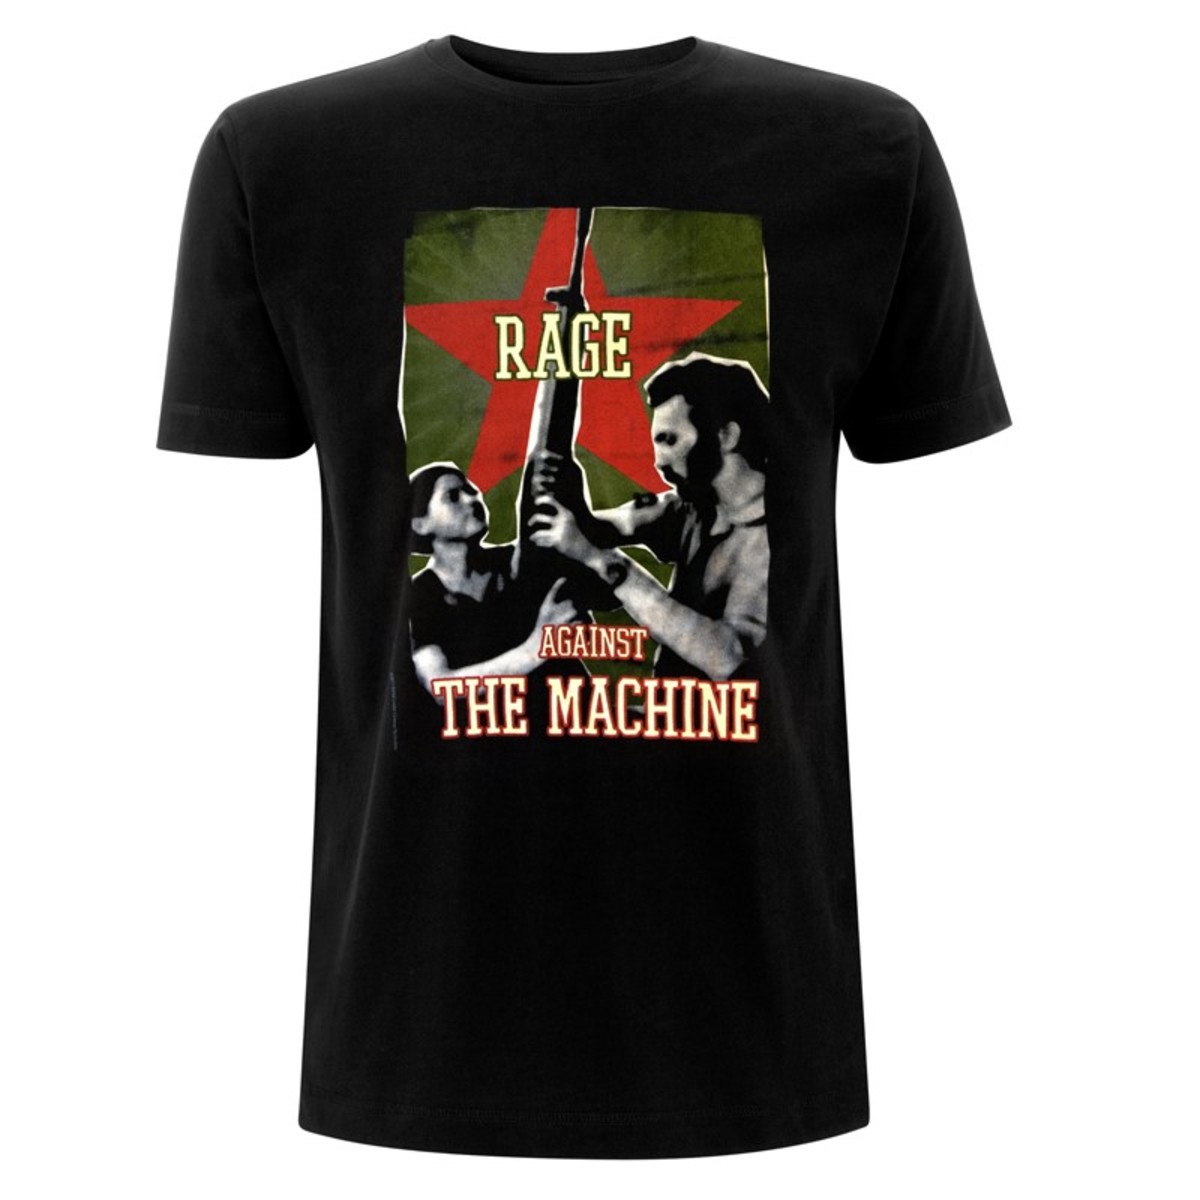 Rage Against The Machine - Gun Star (XL)